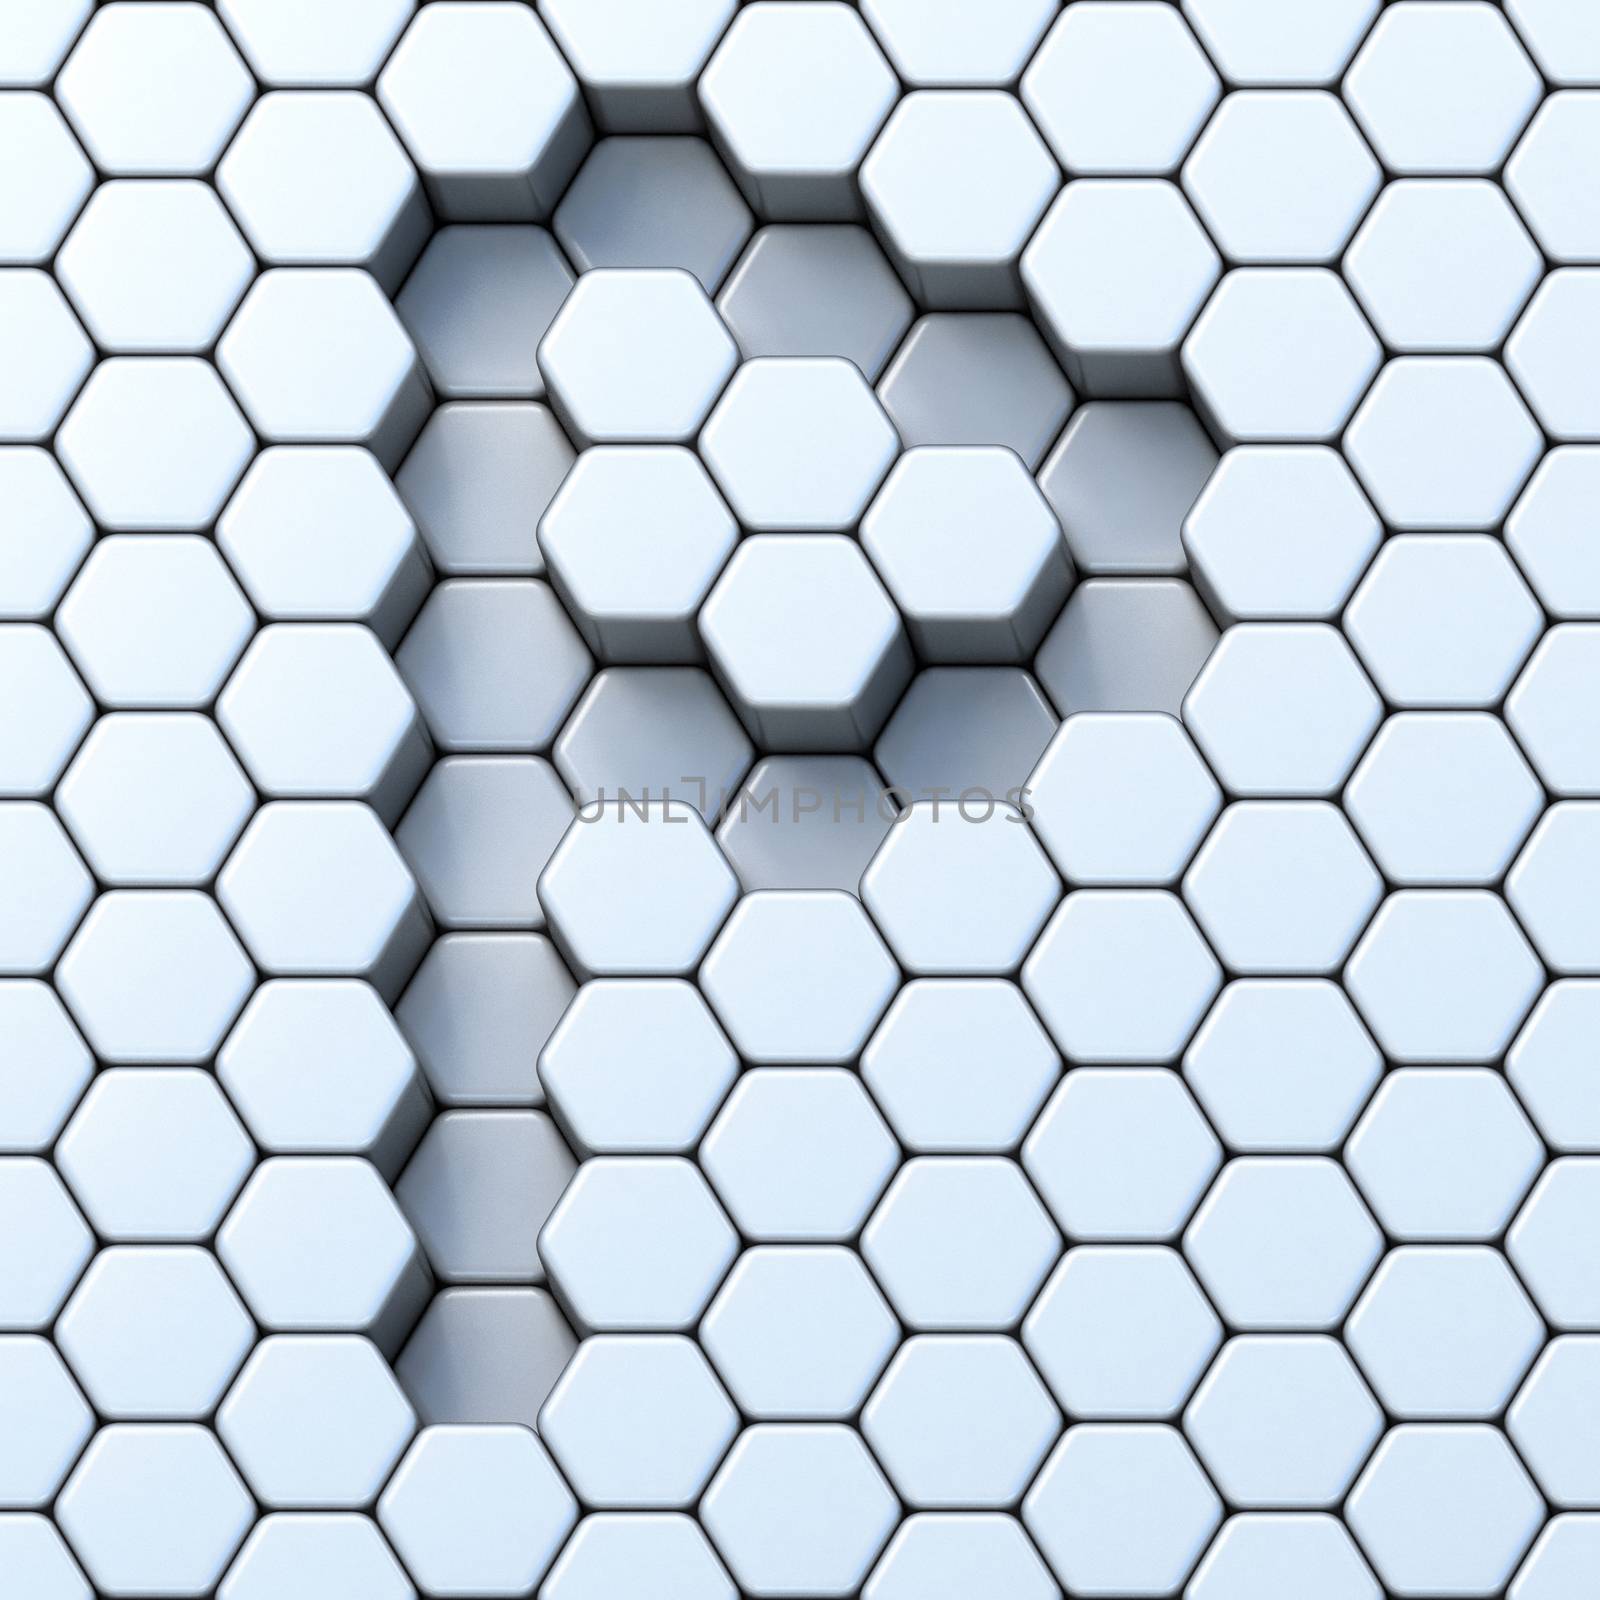 Hexagonal grid letter P 3D render illustration